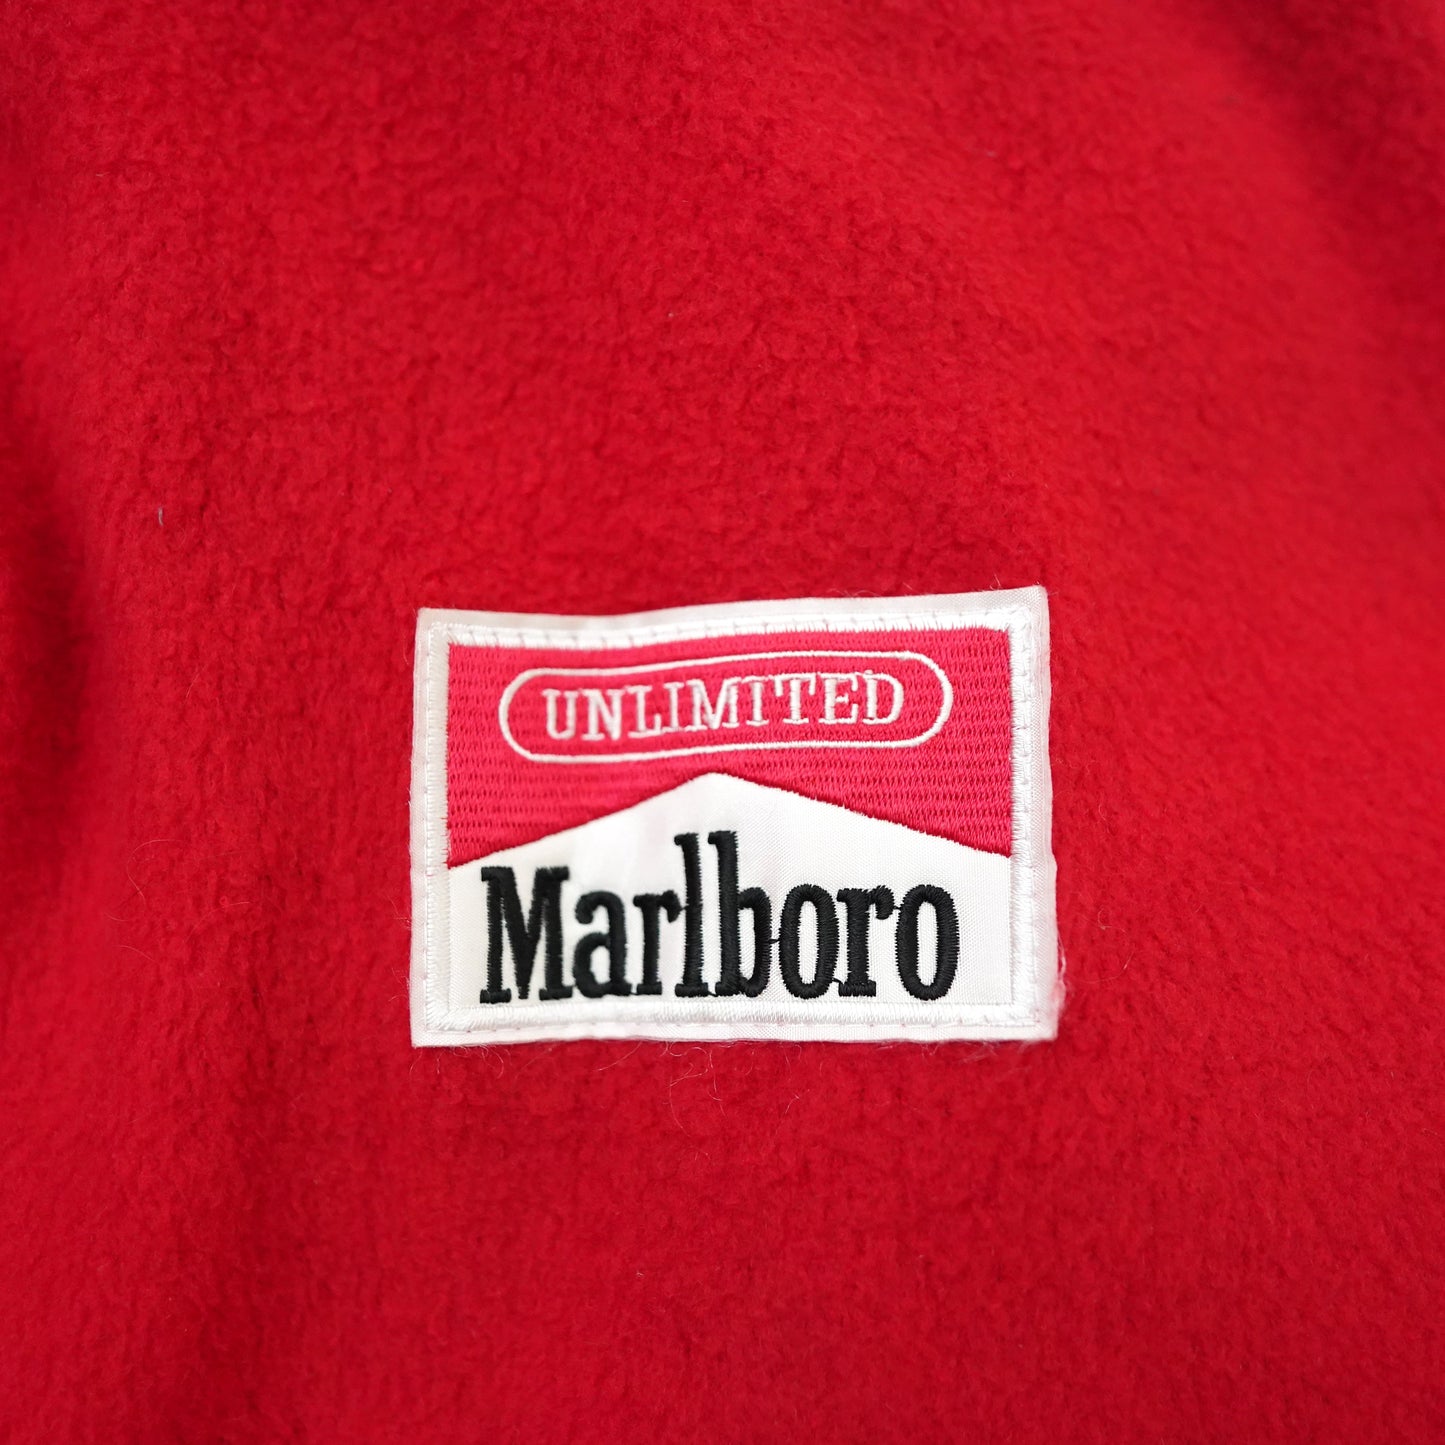 Marlboro reversible fleece jacket